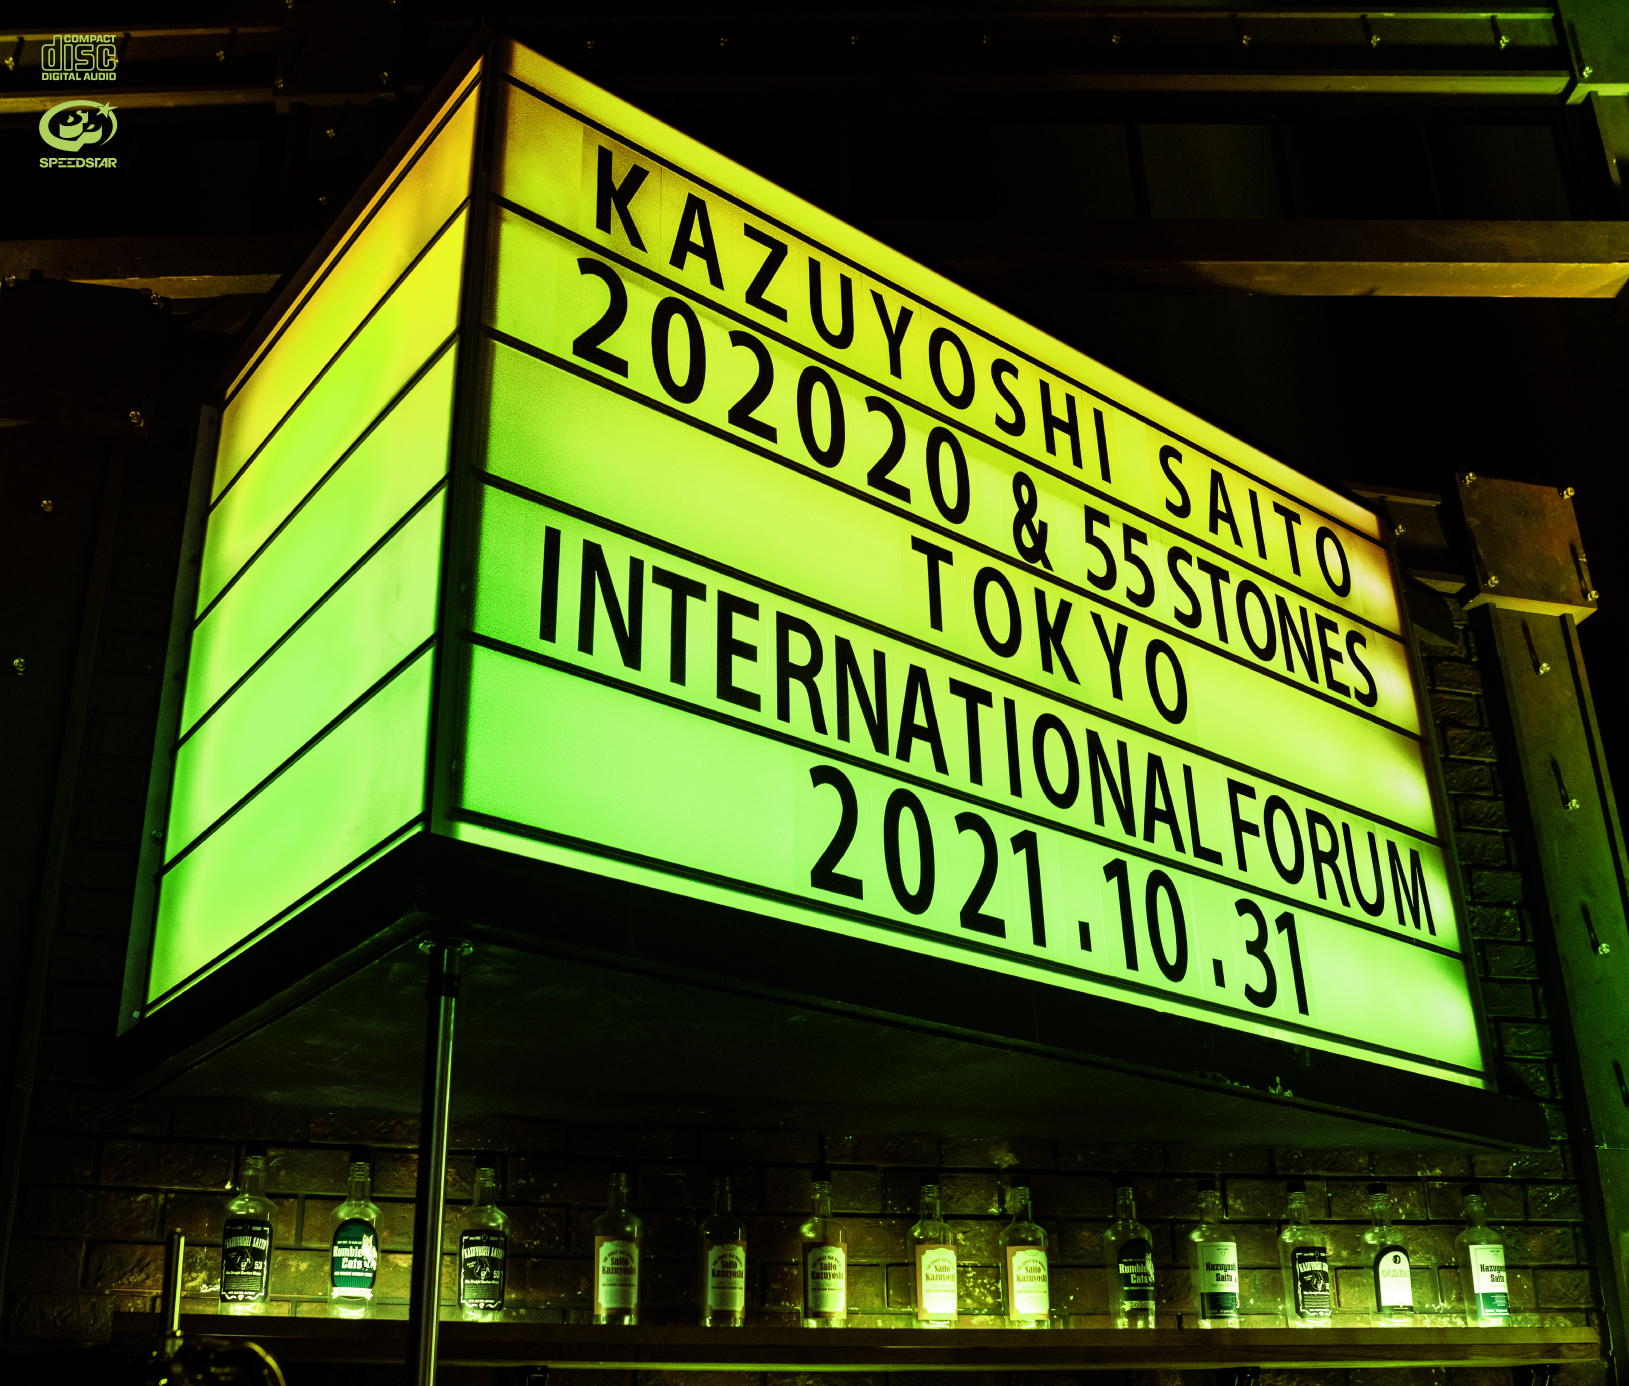 『KAZUYOSHI SAITO LIVE TOUR 2021 “202020 & 55 STONES” Live at 東京国際フォーラム 2021.10.31』jacket